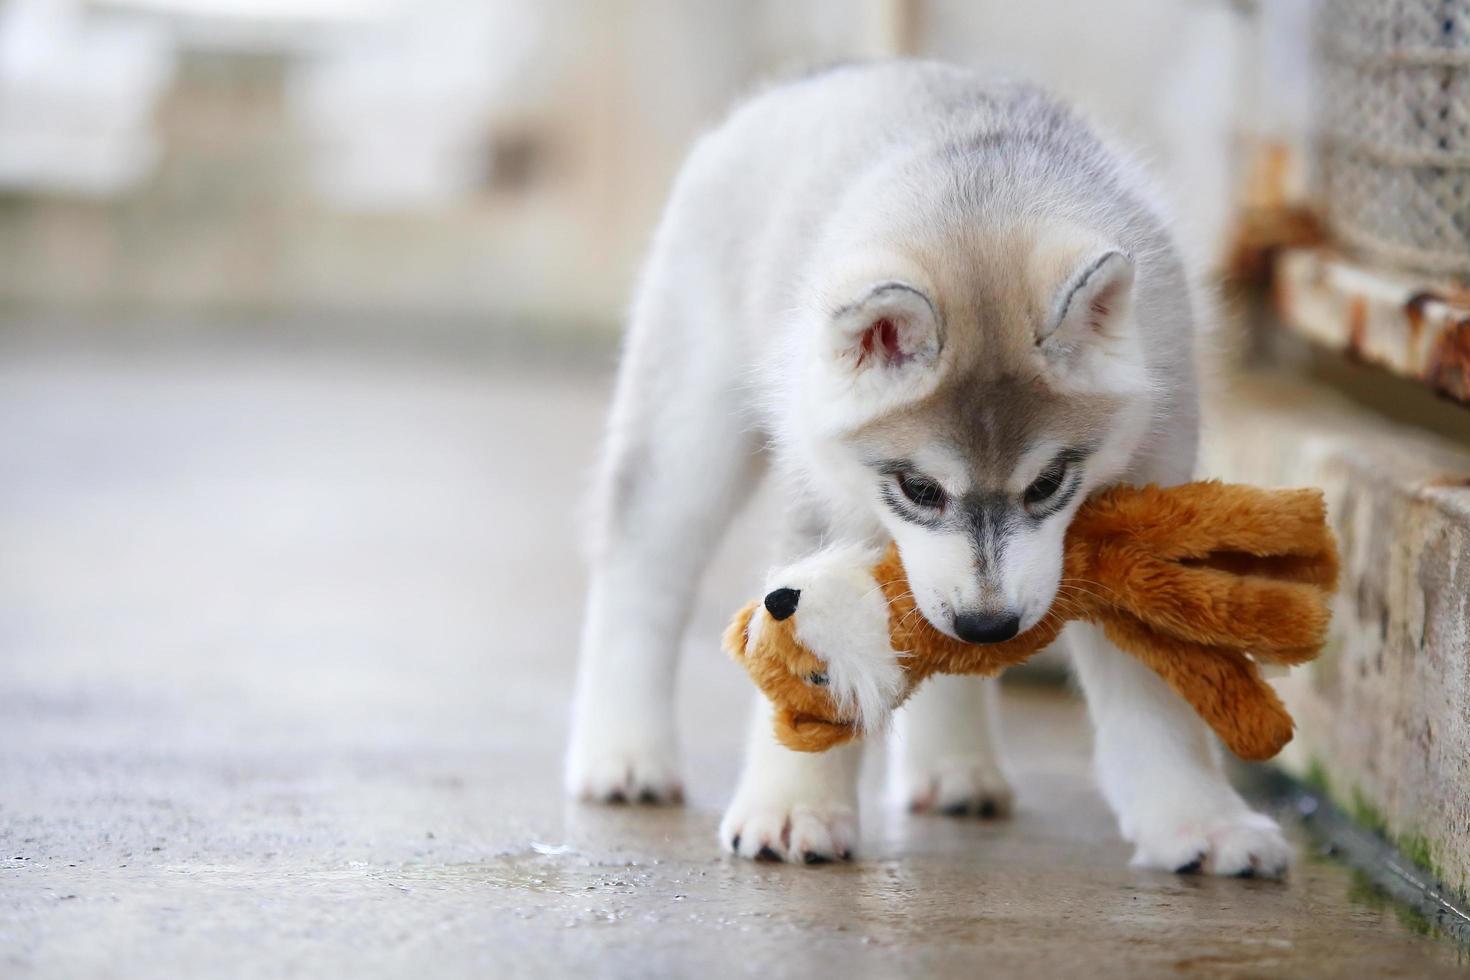 Siberische husky puppy spelen met pop. pluizig puppy met speelgoed in mond. foto